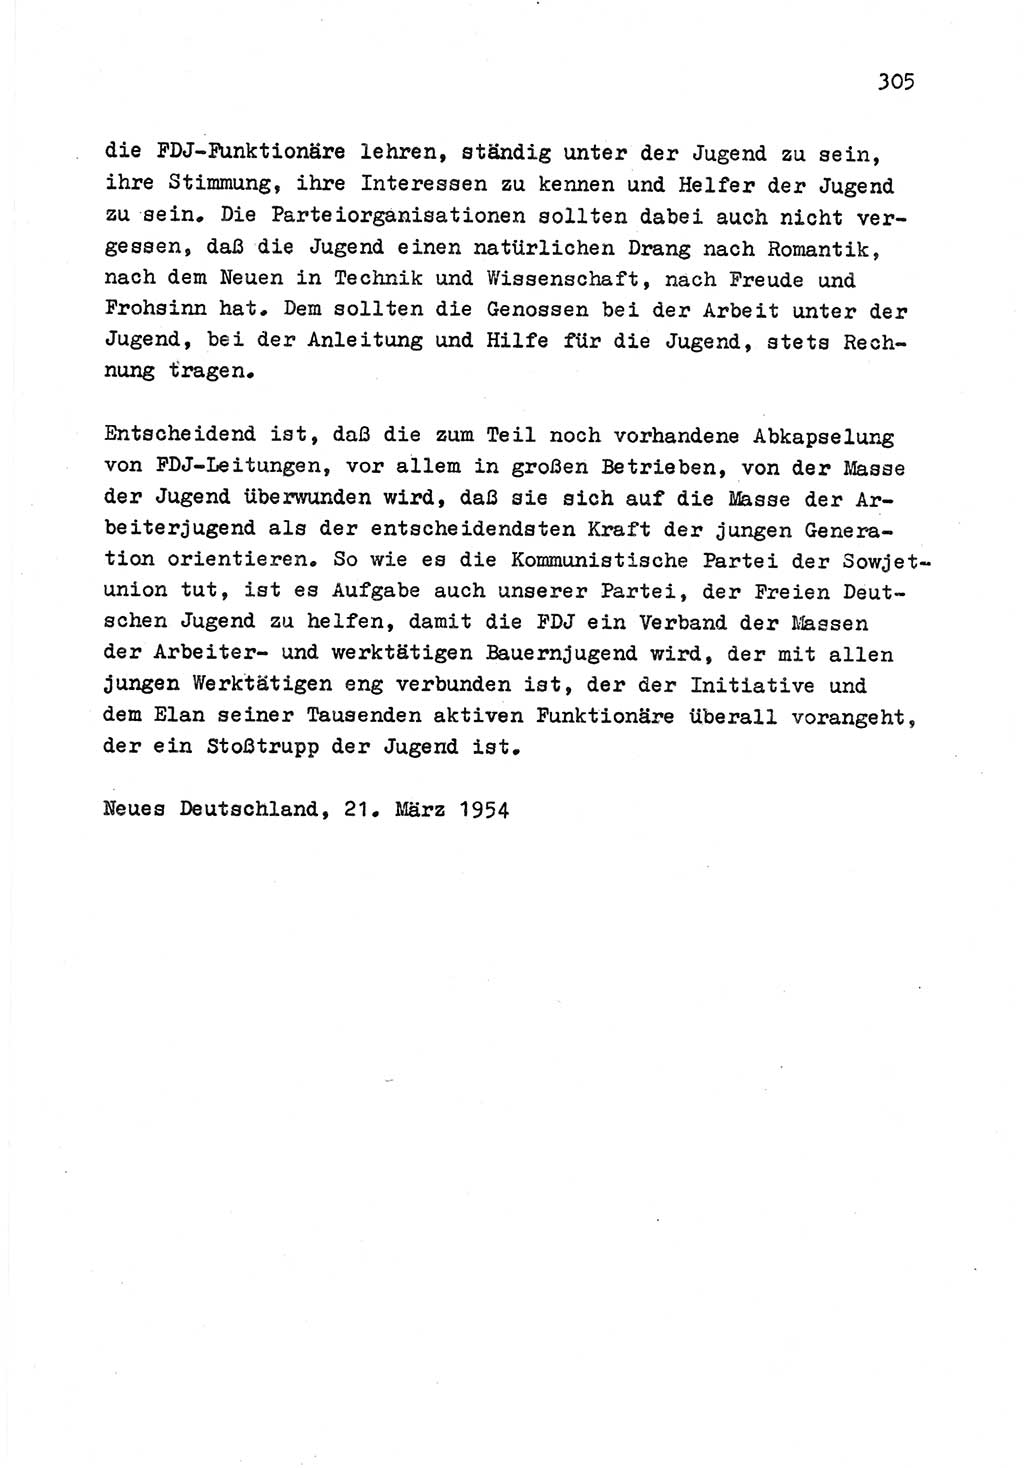 Zu Fragen der Parteiarbeit [Sozialistische Einheitspartei Deutschlands (SED) Deutsche Demokratische Republik (DDR)] 1979, Seite 305 (Fr. PA SED DDR 1979, S. 305)